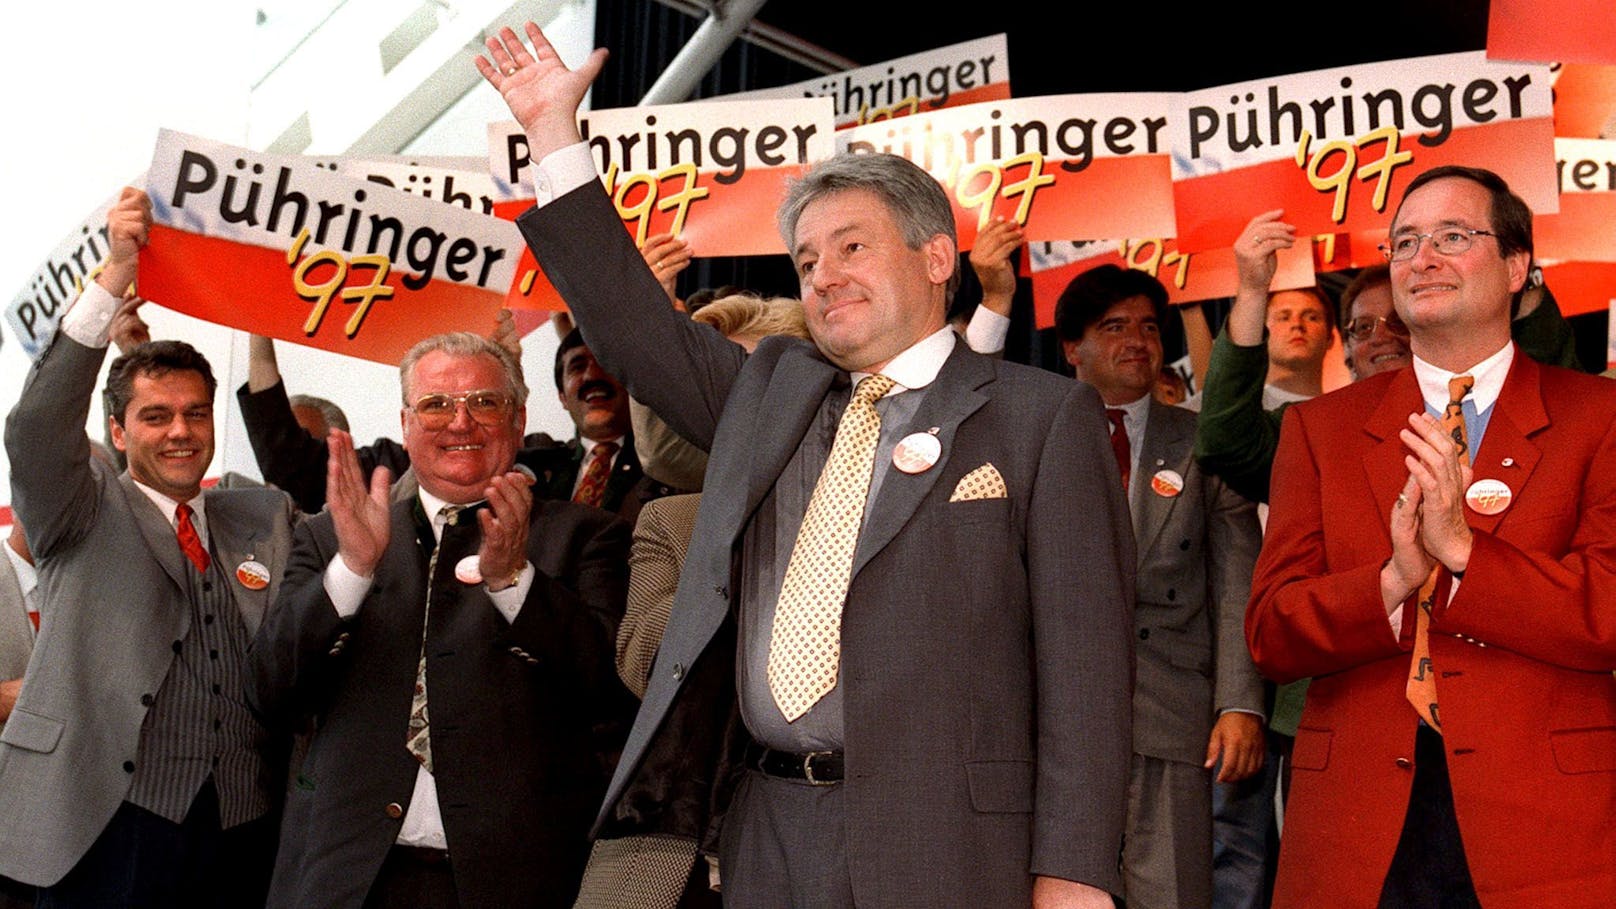 ÖVP-Politiker <strong>Josef Pühringer</strong> amtierte&nbsp;von 1995 bis 2017 als Landeshauptmann von Oberösterreich.